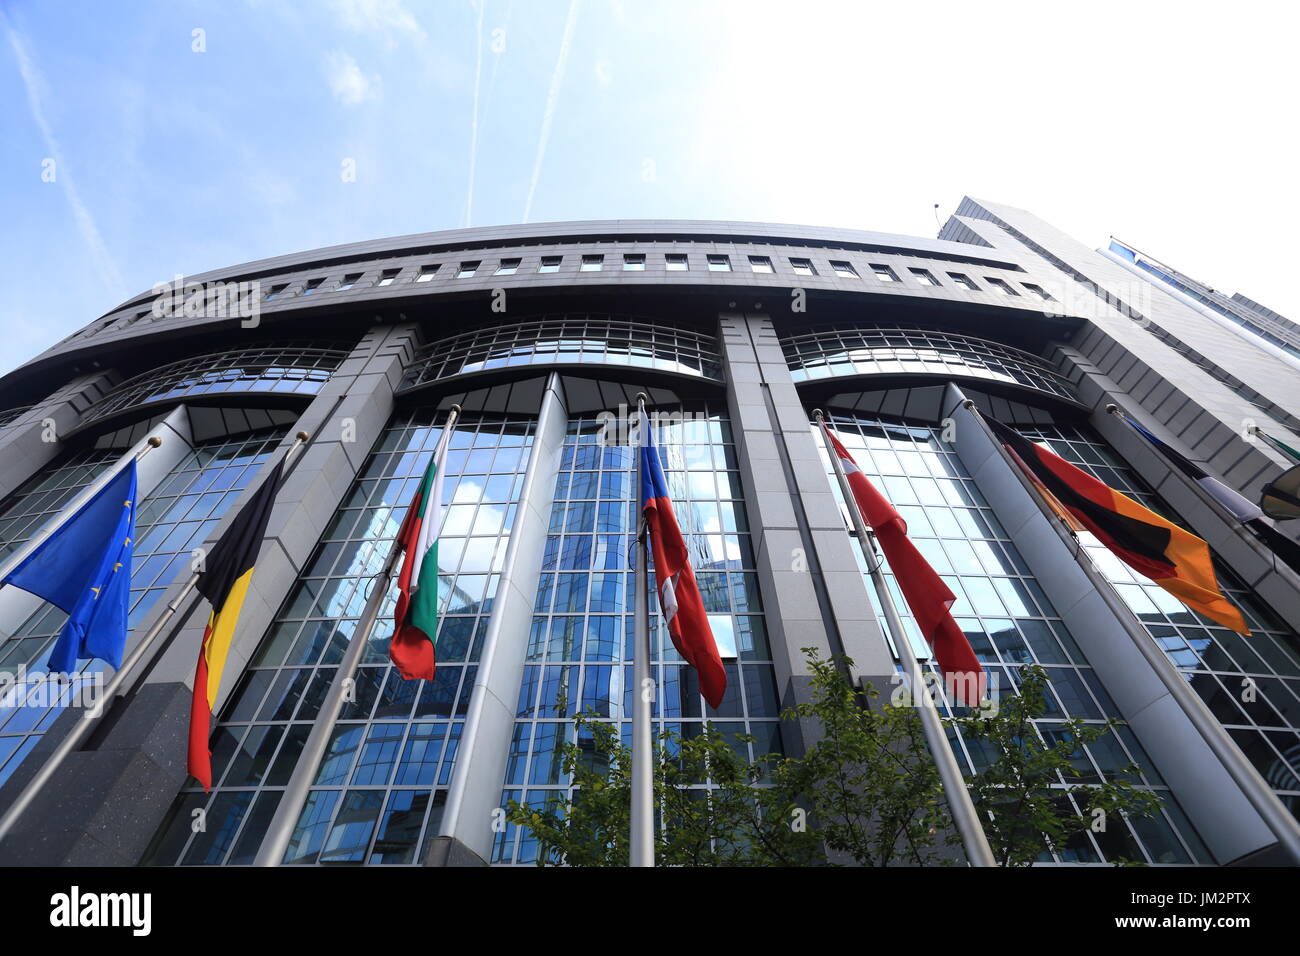 Bruxelles, Belgique - 17 juillet 2017 : Les drapeaux sur bâtiment du Parlement européen. Drapeaux des pays de l'UE en face de façade de Parlement européen buil Banque D'Images